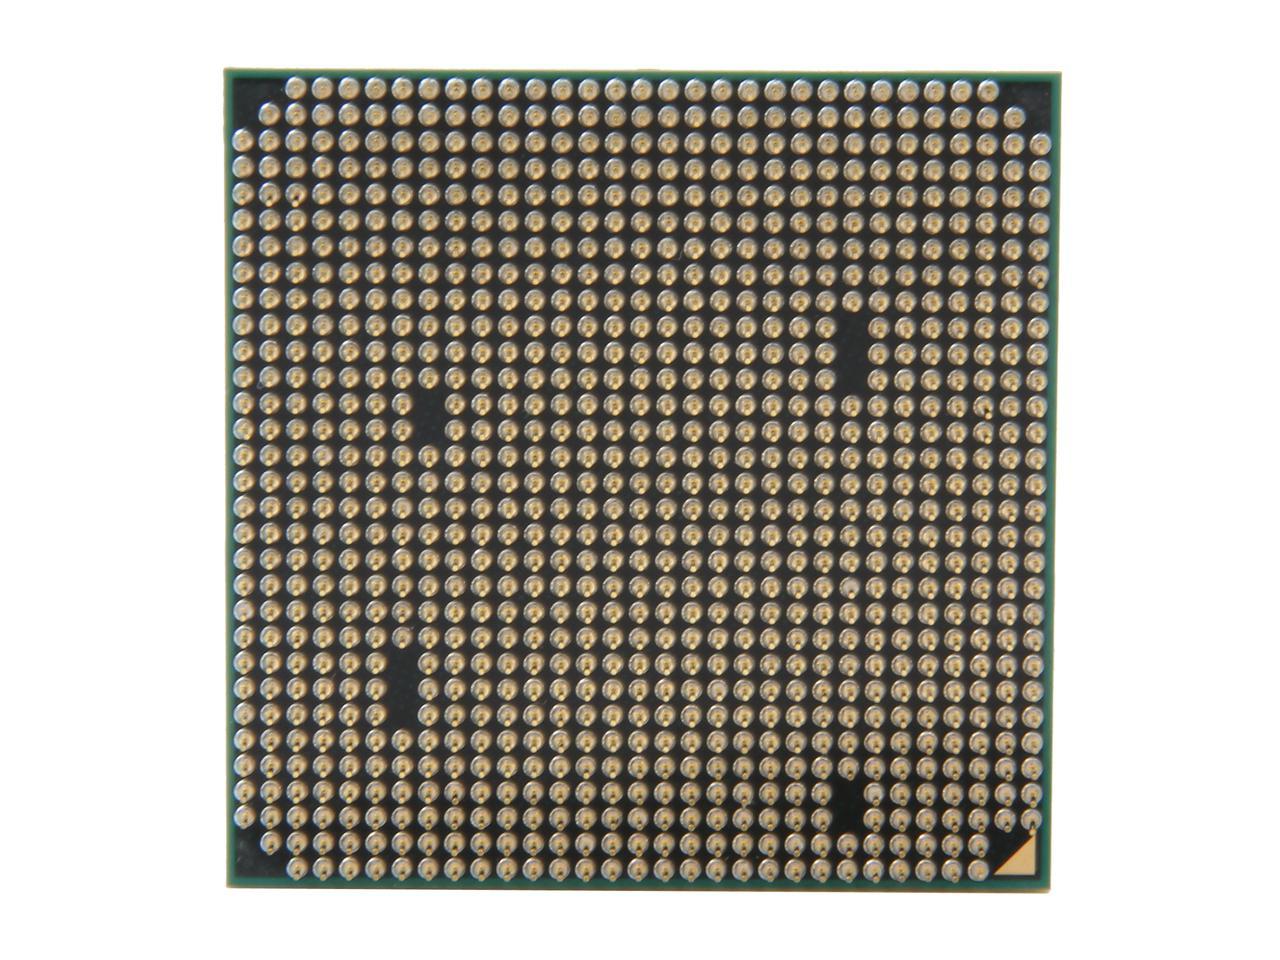 AMD Phenom II X6 1065T Thuban 6-Core 2.9GHz (3.4GHz Turbo Boost) Socket AM3 95W HDT65TWFK6DGR Desktop Processor